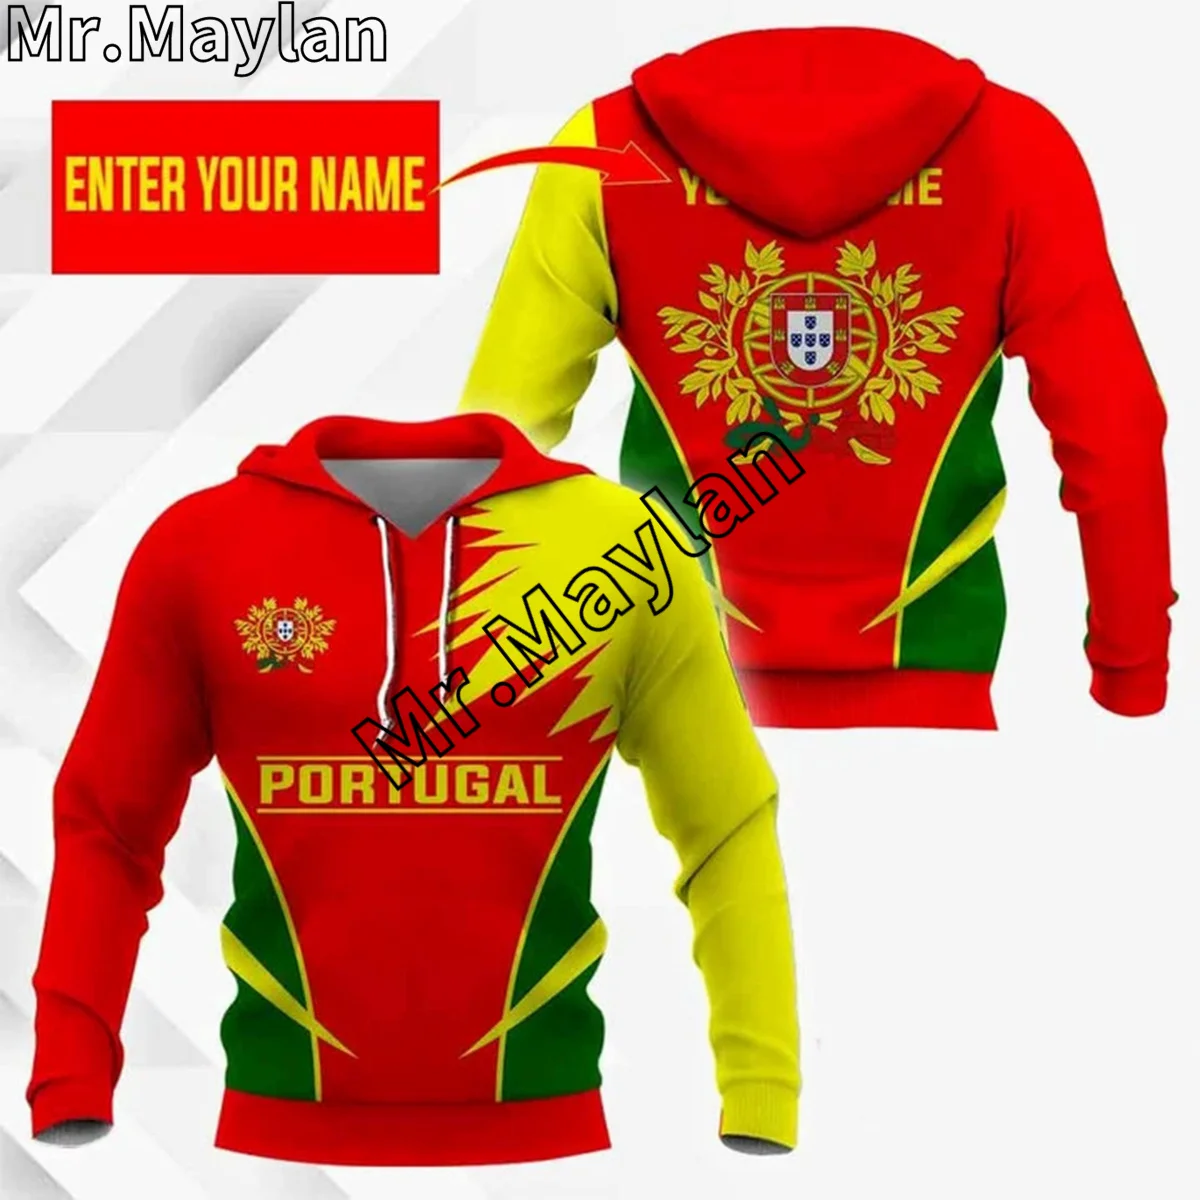 

Толстовка с 3D-принтом флага Португалии для мужчин и женщин, худи желтого, зеленого и красного цветов, уличная одежда, пуловер на молнии, повседневный спортивный костюм